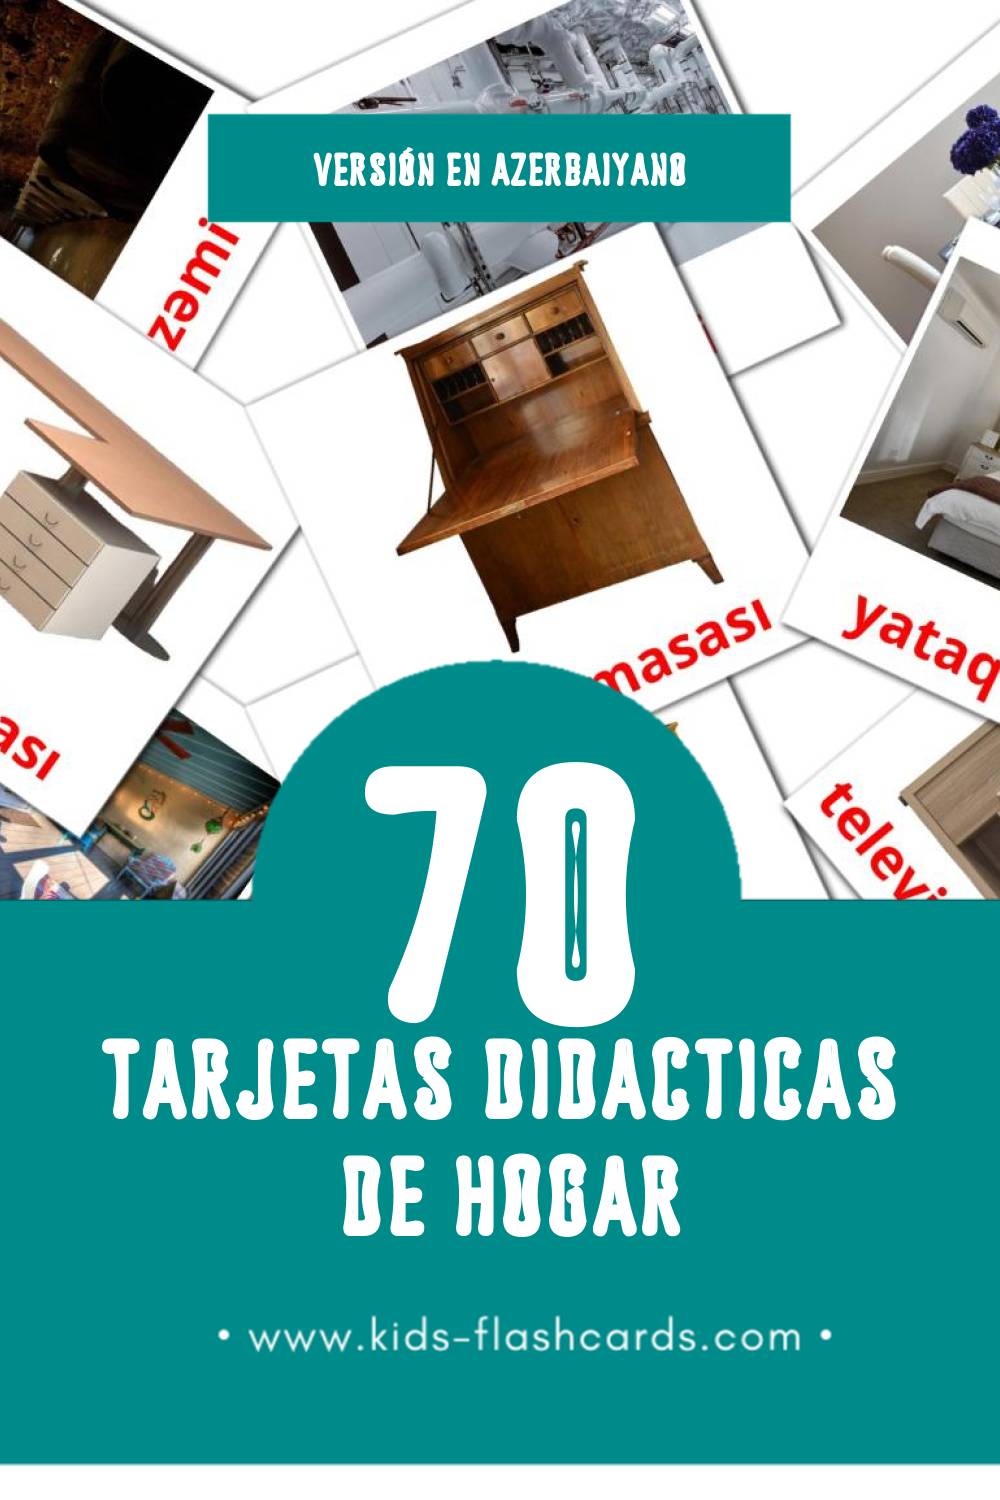 Tarjetas visuales de Будинок para niños pequeños (73 tarjetas en Azerbaiyano)